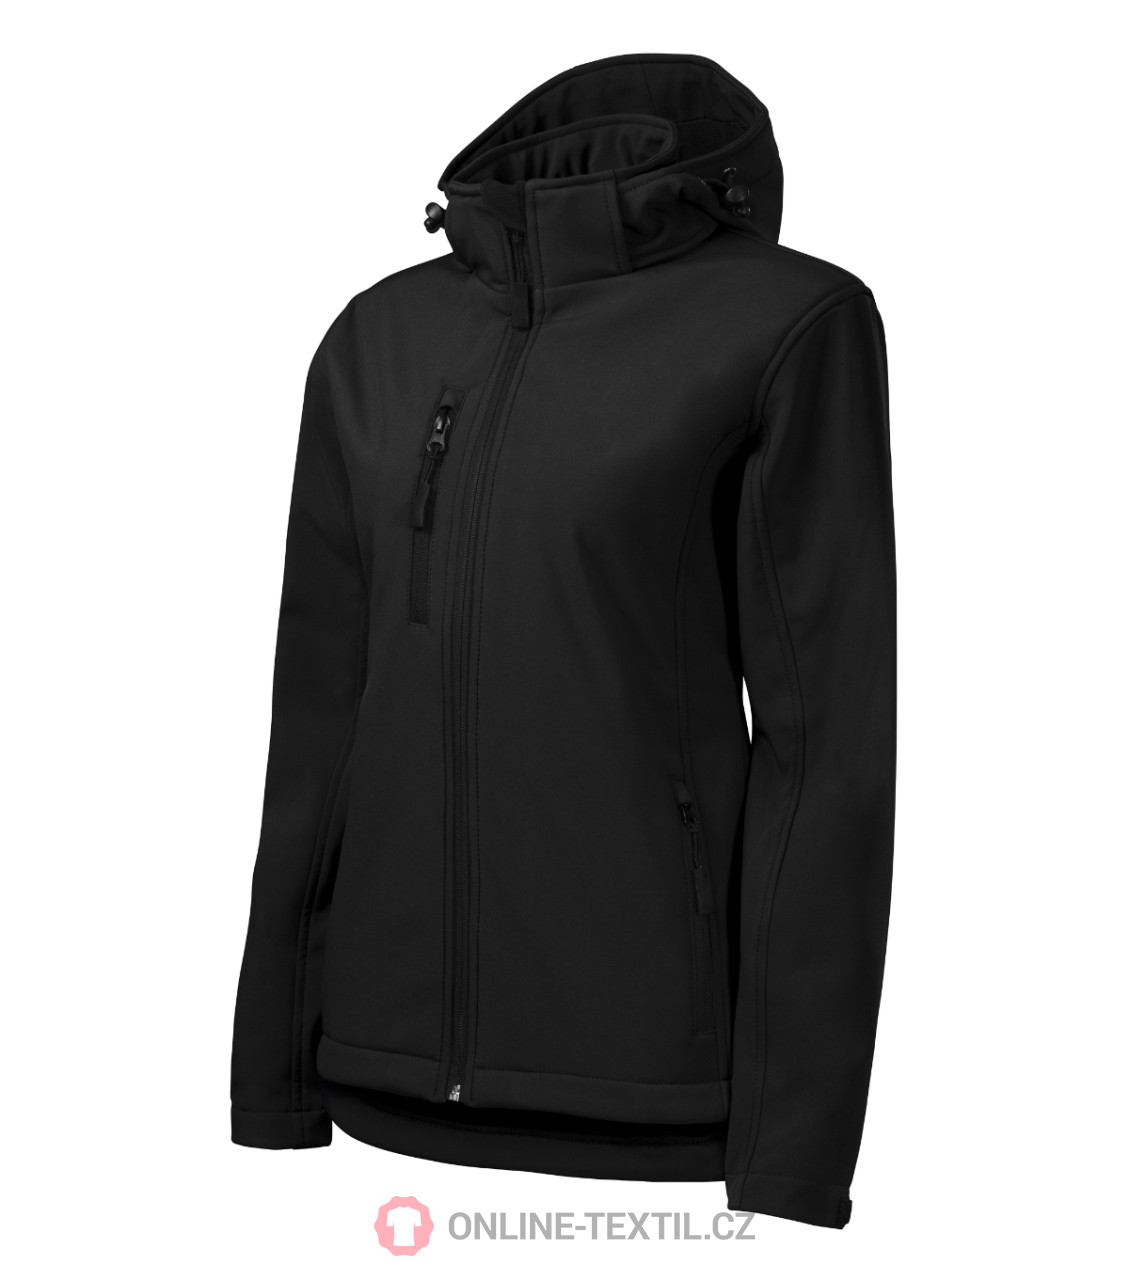 Forbindelse slå Bunke af MALFINI Ladies Softshell Jacket Performance with removable hood 521 - black  from the MALFINI collection | ONLINE-TEXTIL.COM